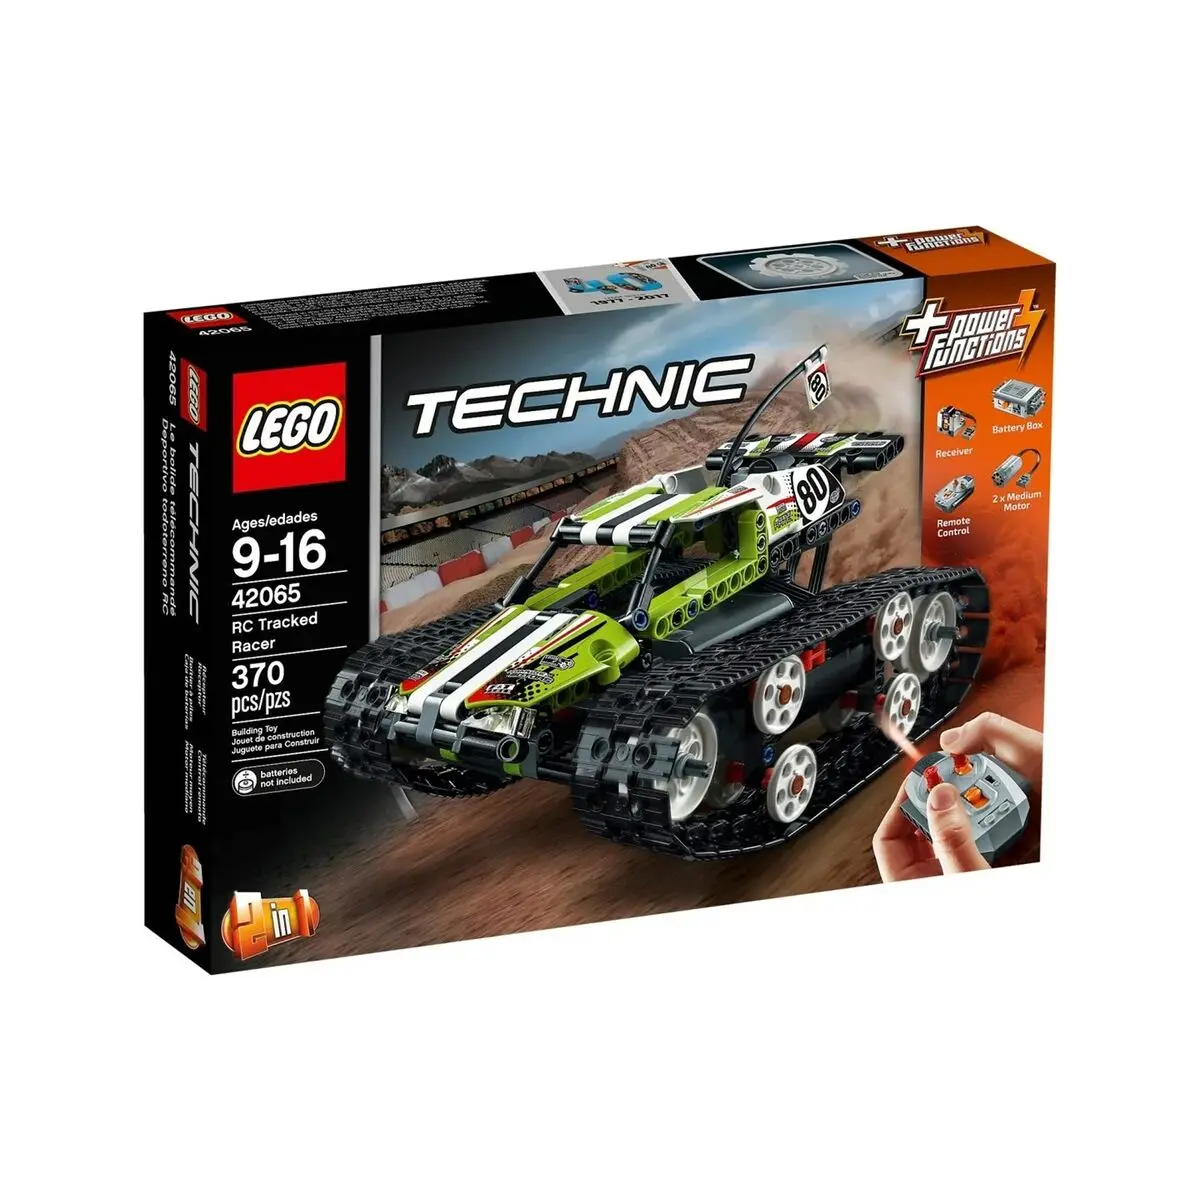 Set di Costruzioni Lego 42065 Technic Tracked Racer 370 Pezzi